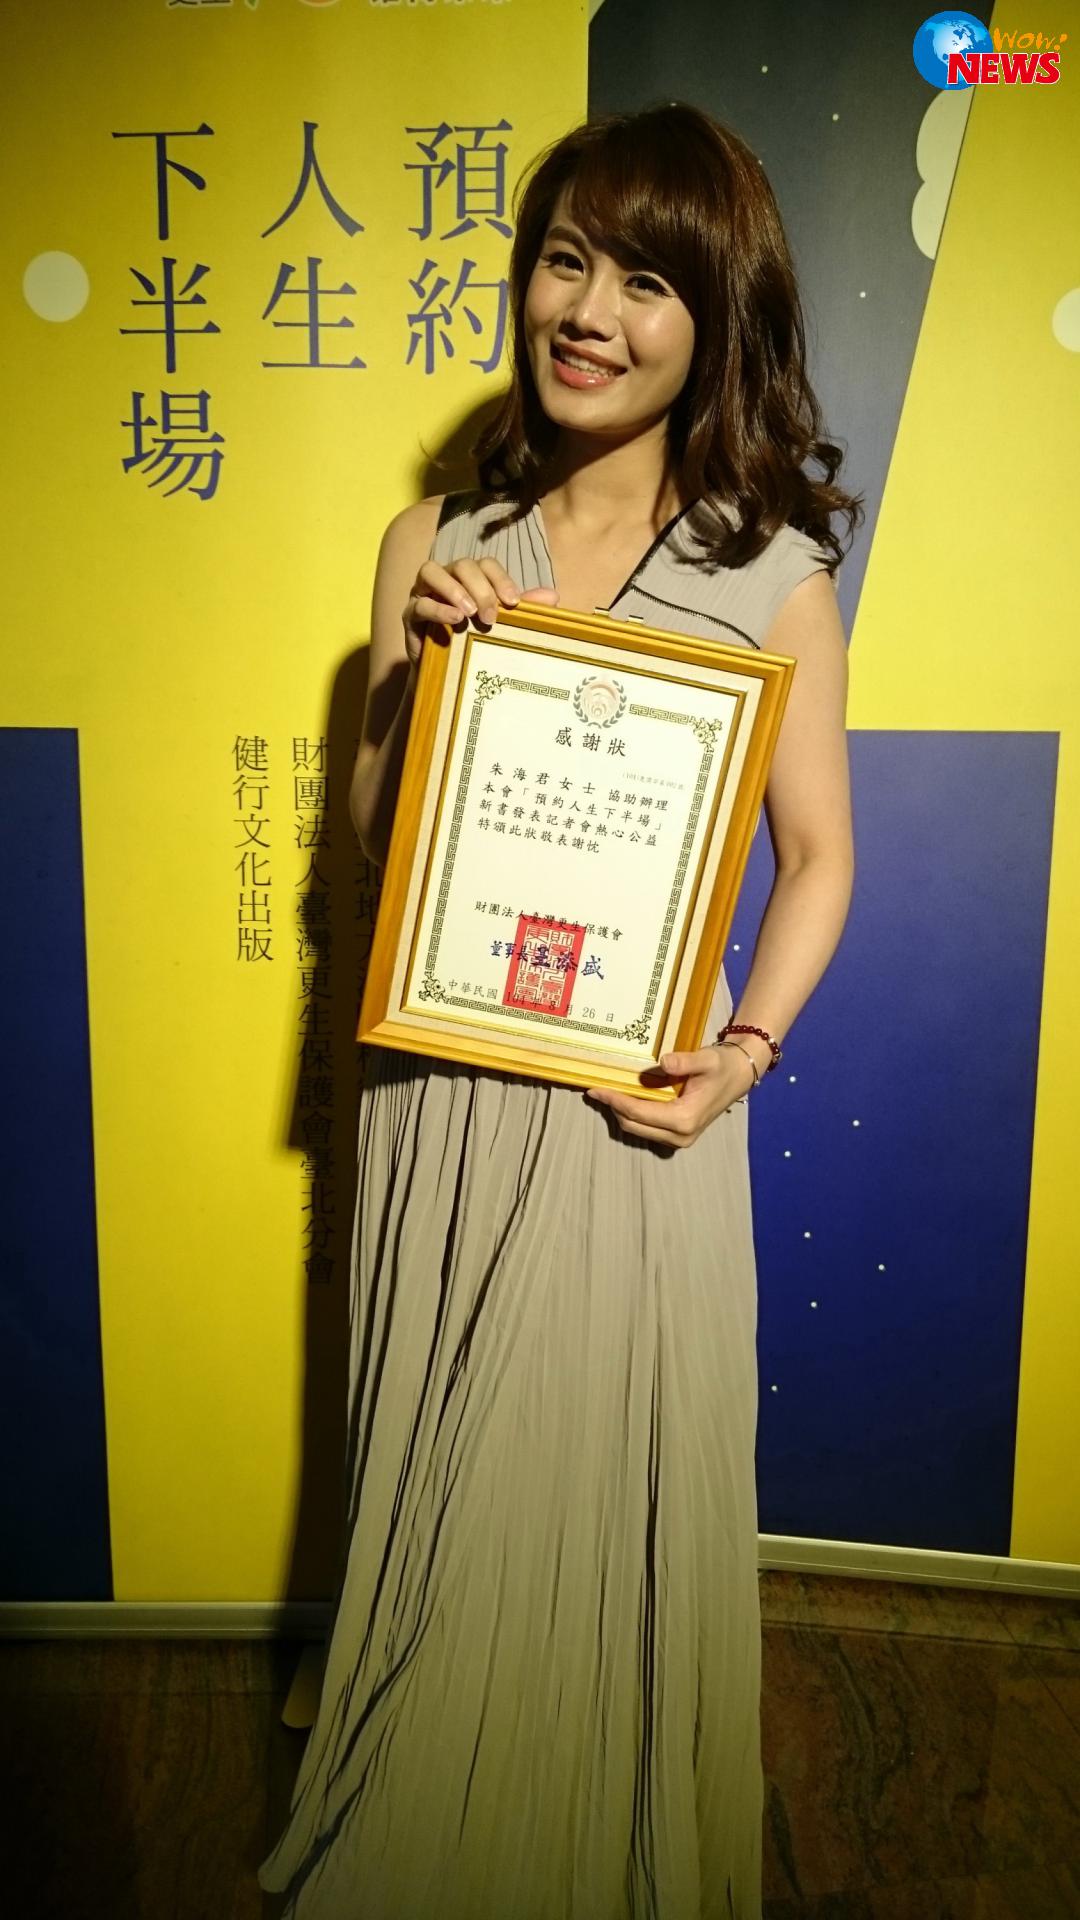 朱海君唱出更生人心情写照获颁「功在教化」奖状 LIFE生活网